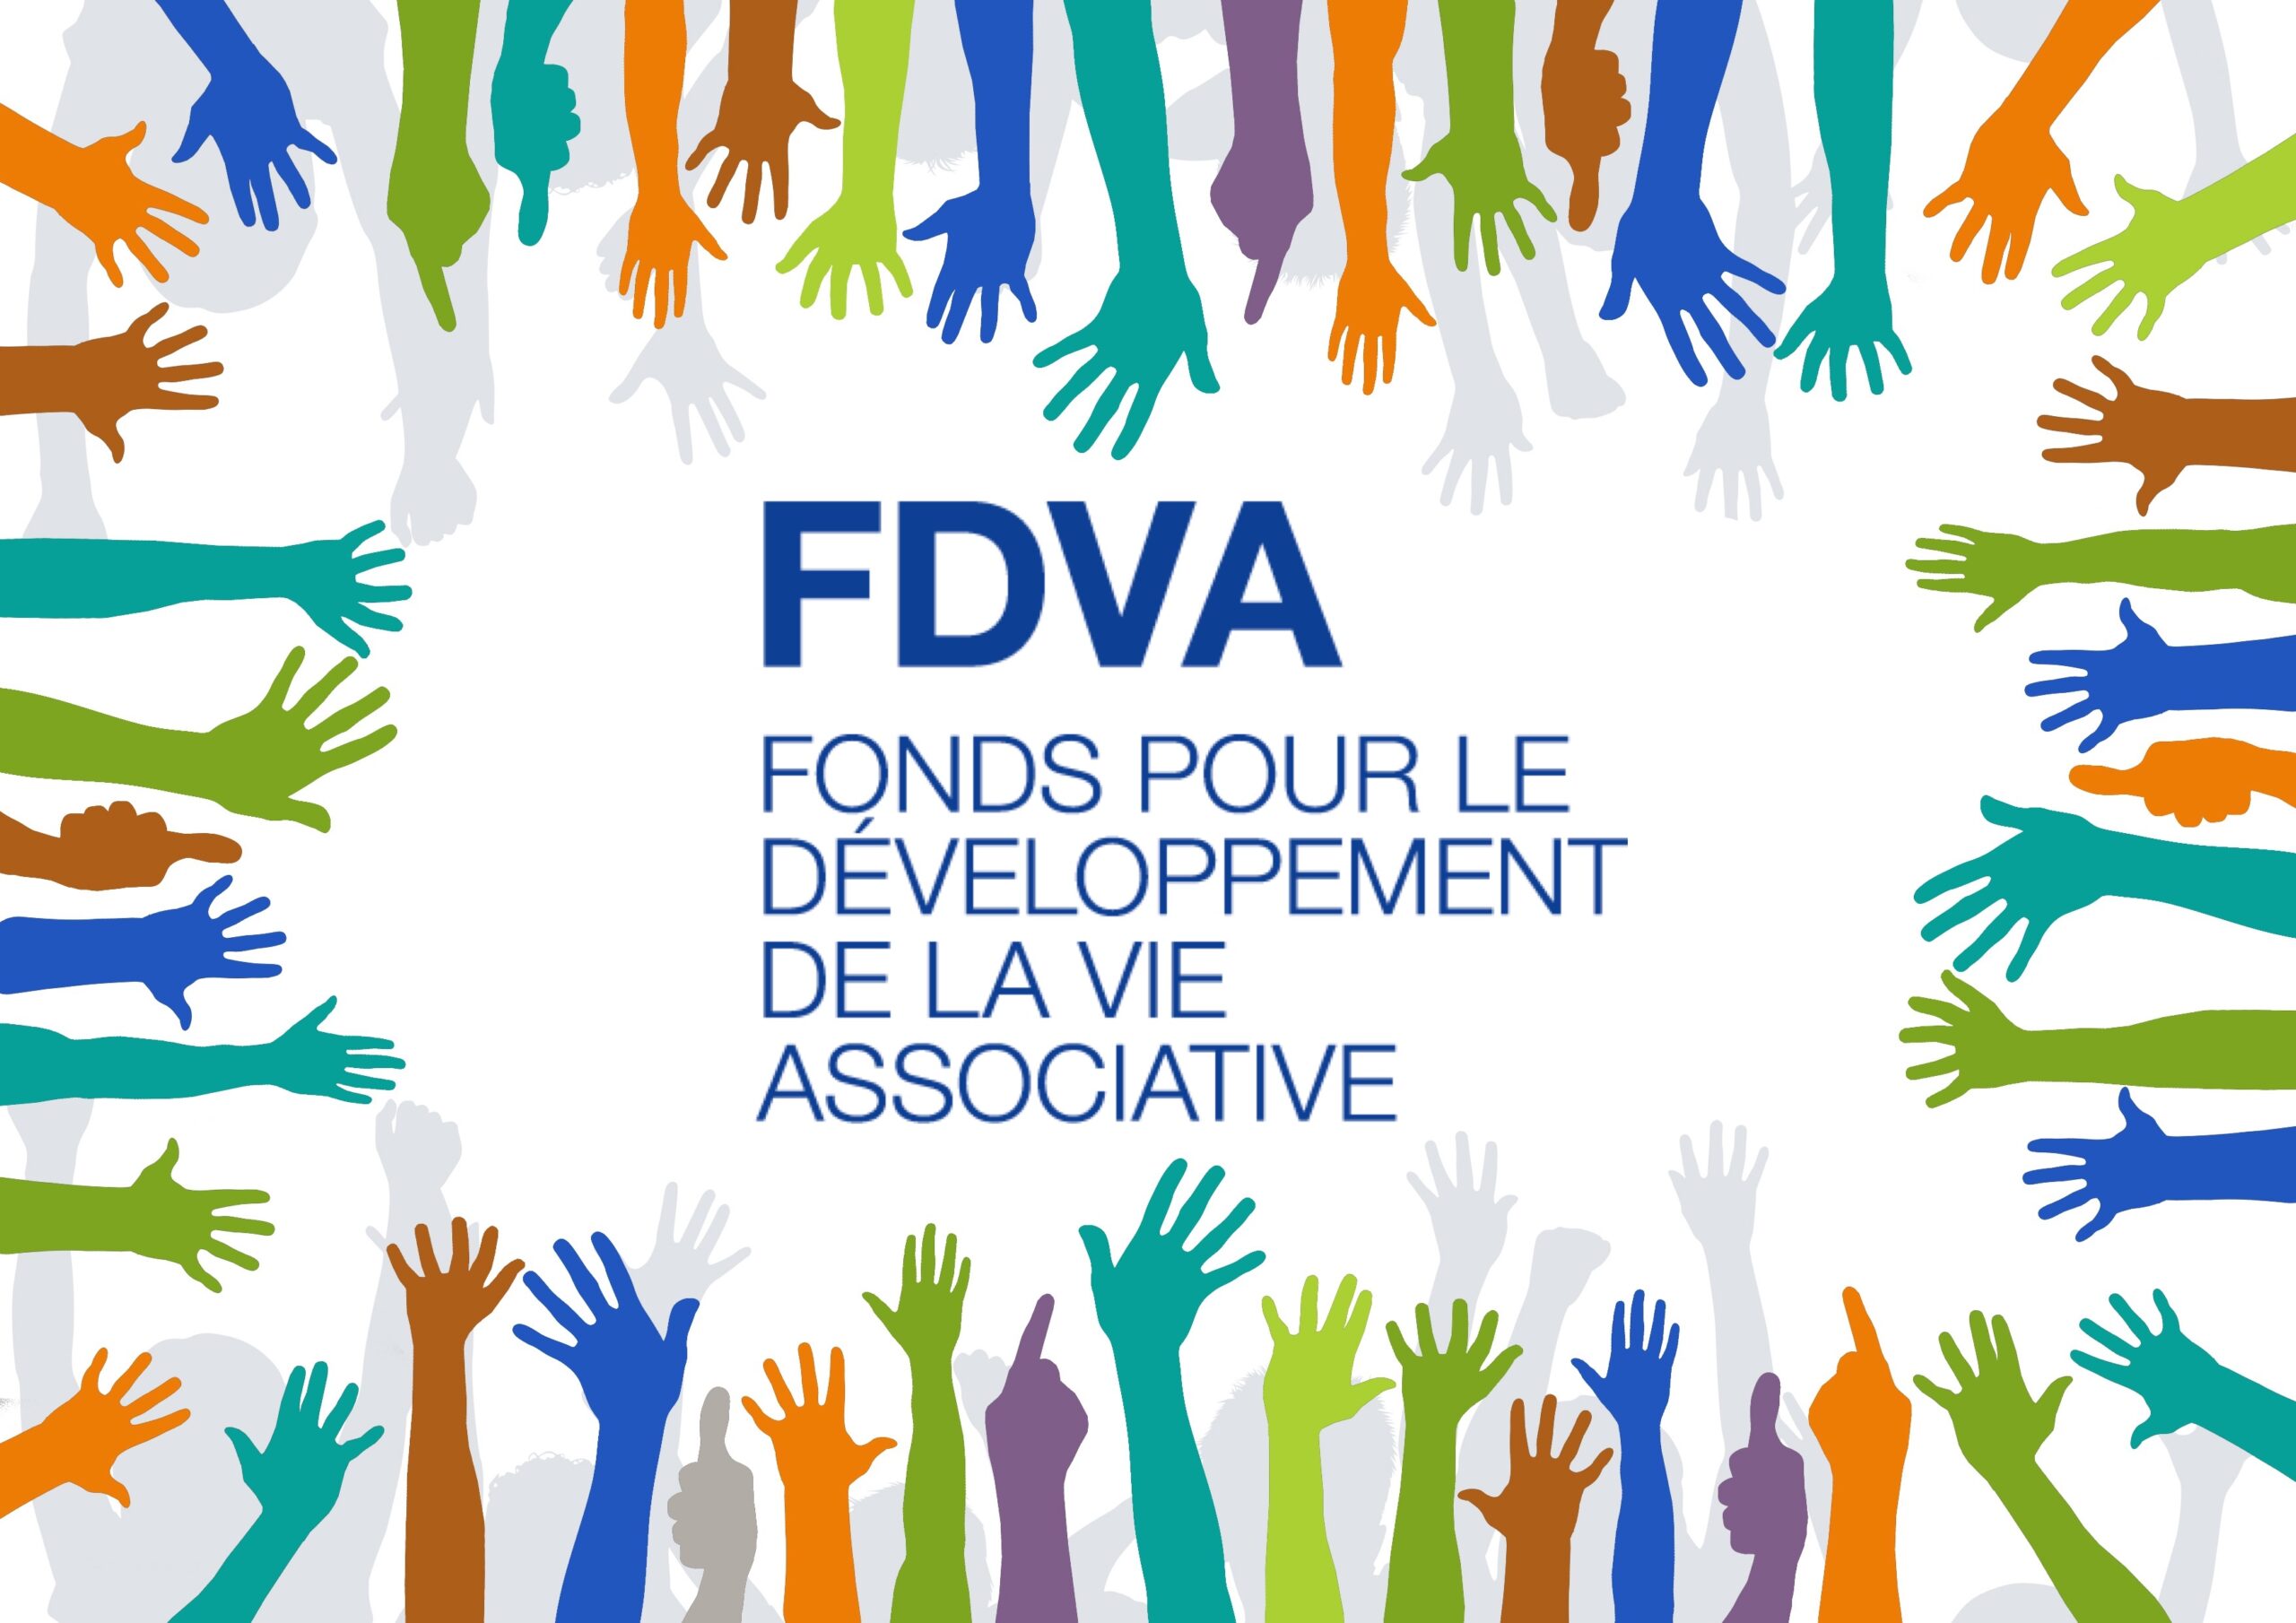 Formation des bénévoles : faites-les financer par le FDVA